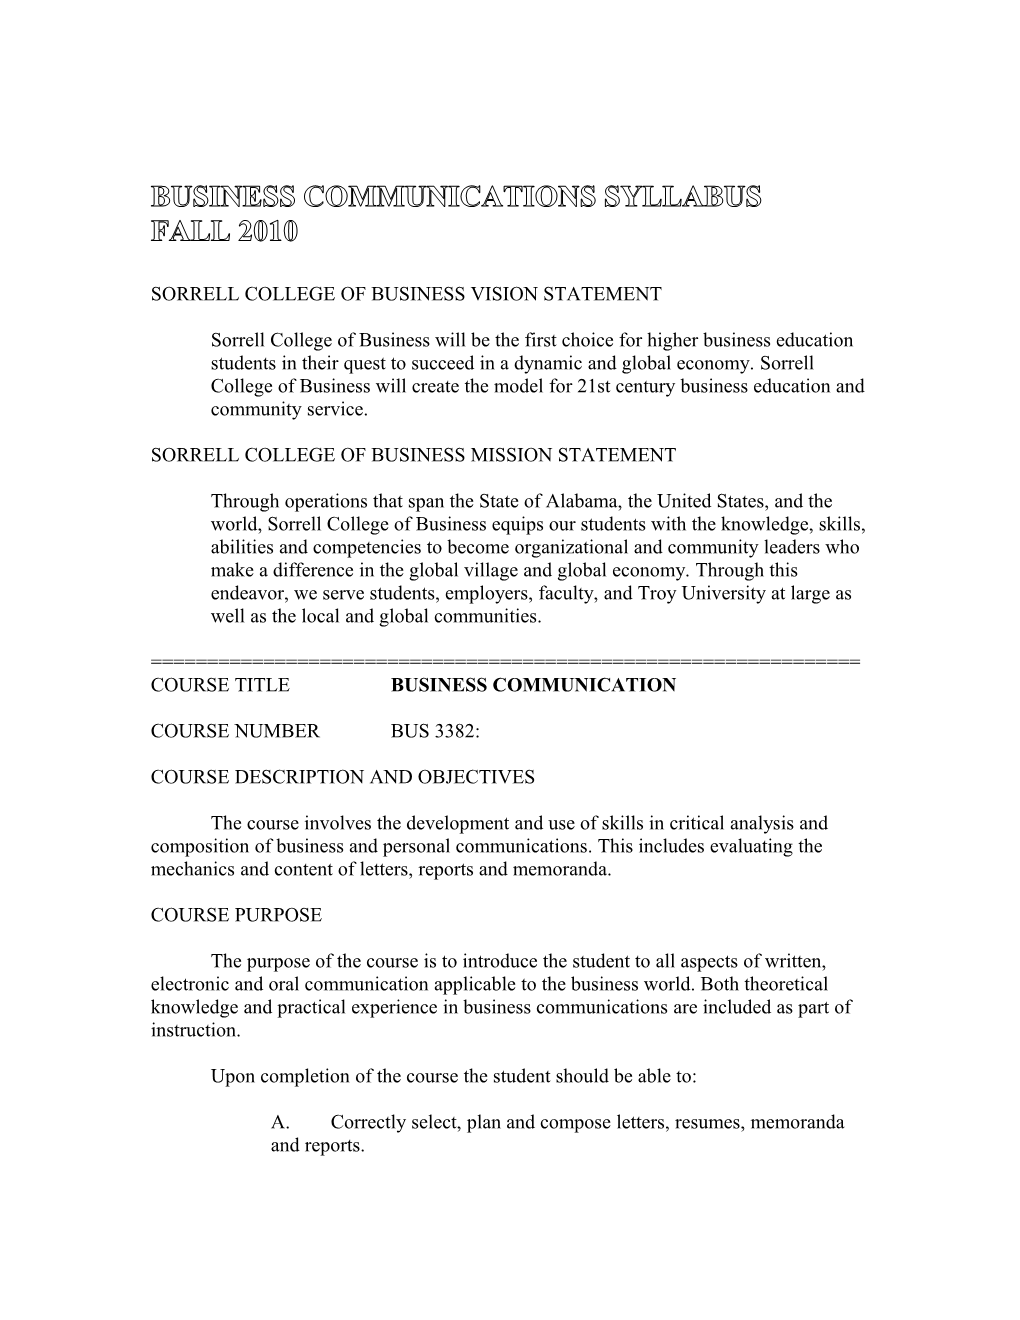 Business Communications Syllabus